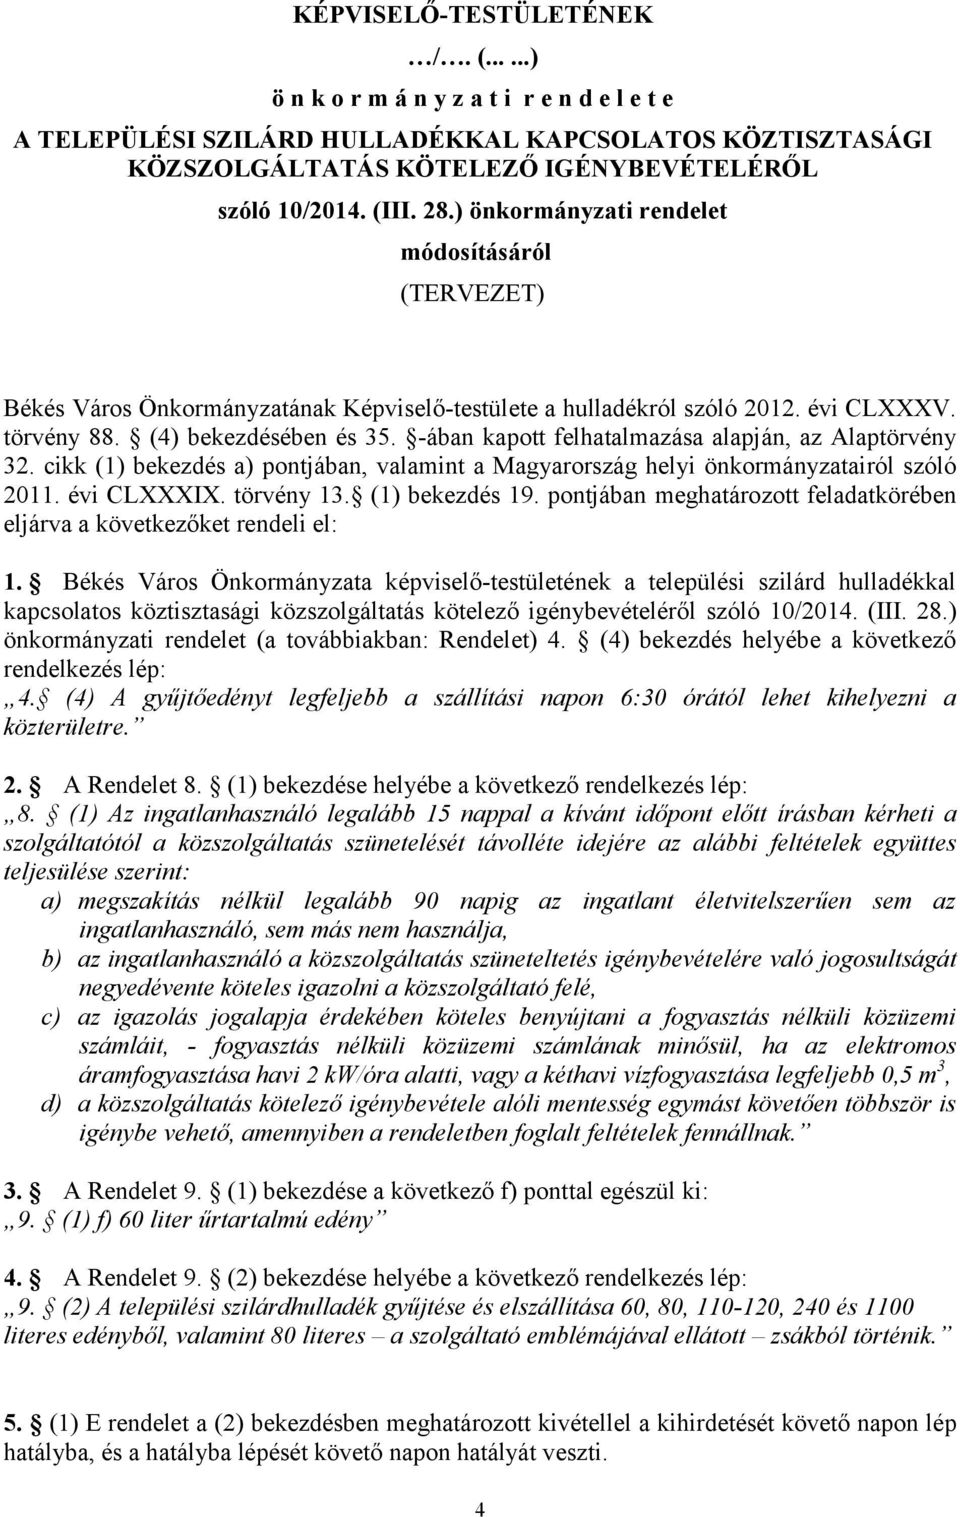 -ában kapott felhatalmazása alapján, az Alaptörvény 32. cikk (1) bekezdés a) pontjában, valamint a Magyarország helyi önkormányzatairól szóló 2011. évi CLXXXIX. törvény 13. (1) bekezdés 19.